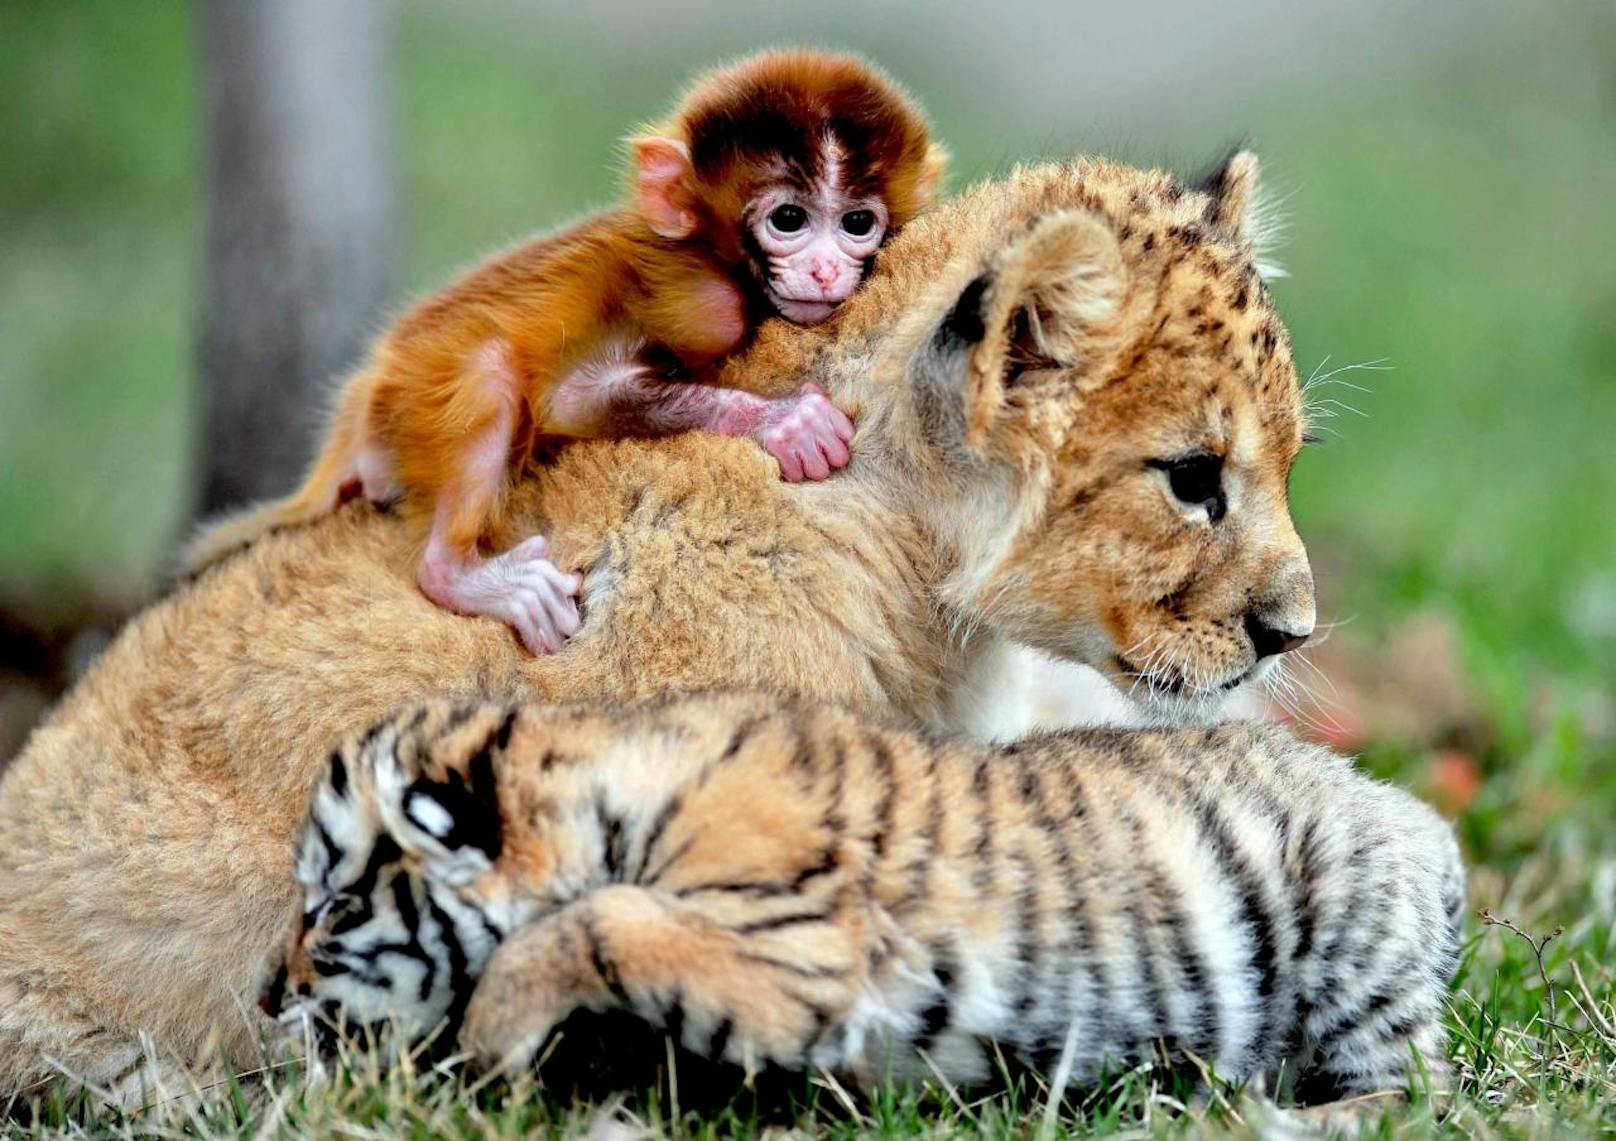 <b>Süßes Dreierpack!</b> Affenbaby, Tigerbaby und Löwenbaby kuscheln miteinander. Spotted im "Kindergarten" eines Zoos in Shenyang (China).